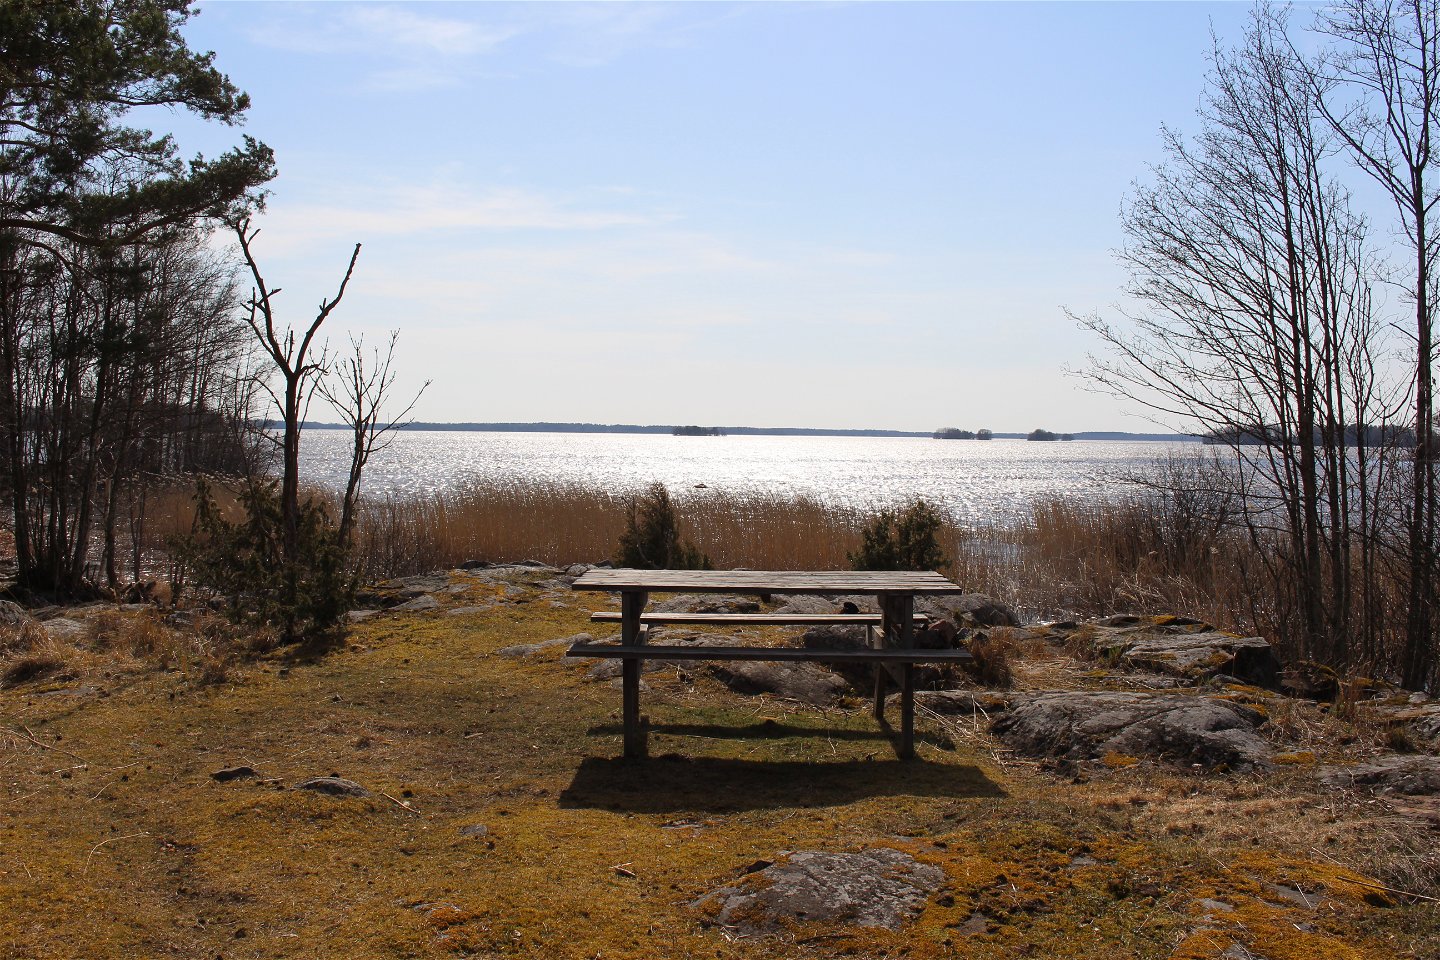 Ett bänkbord står på en glänta med utsikt över vass och en sjö. Runtom rastplatsen växer träd och det ligger en del större stenar på marken.